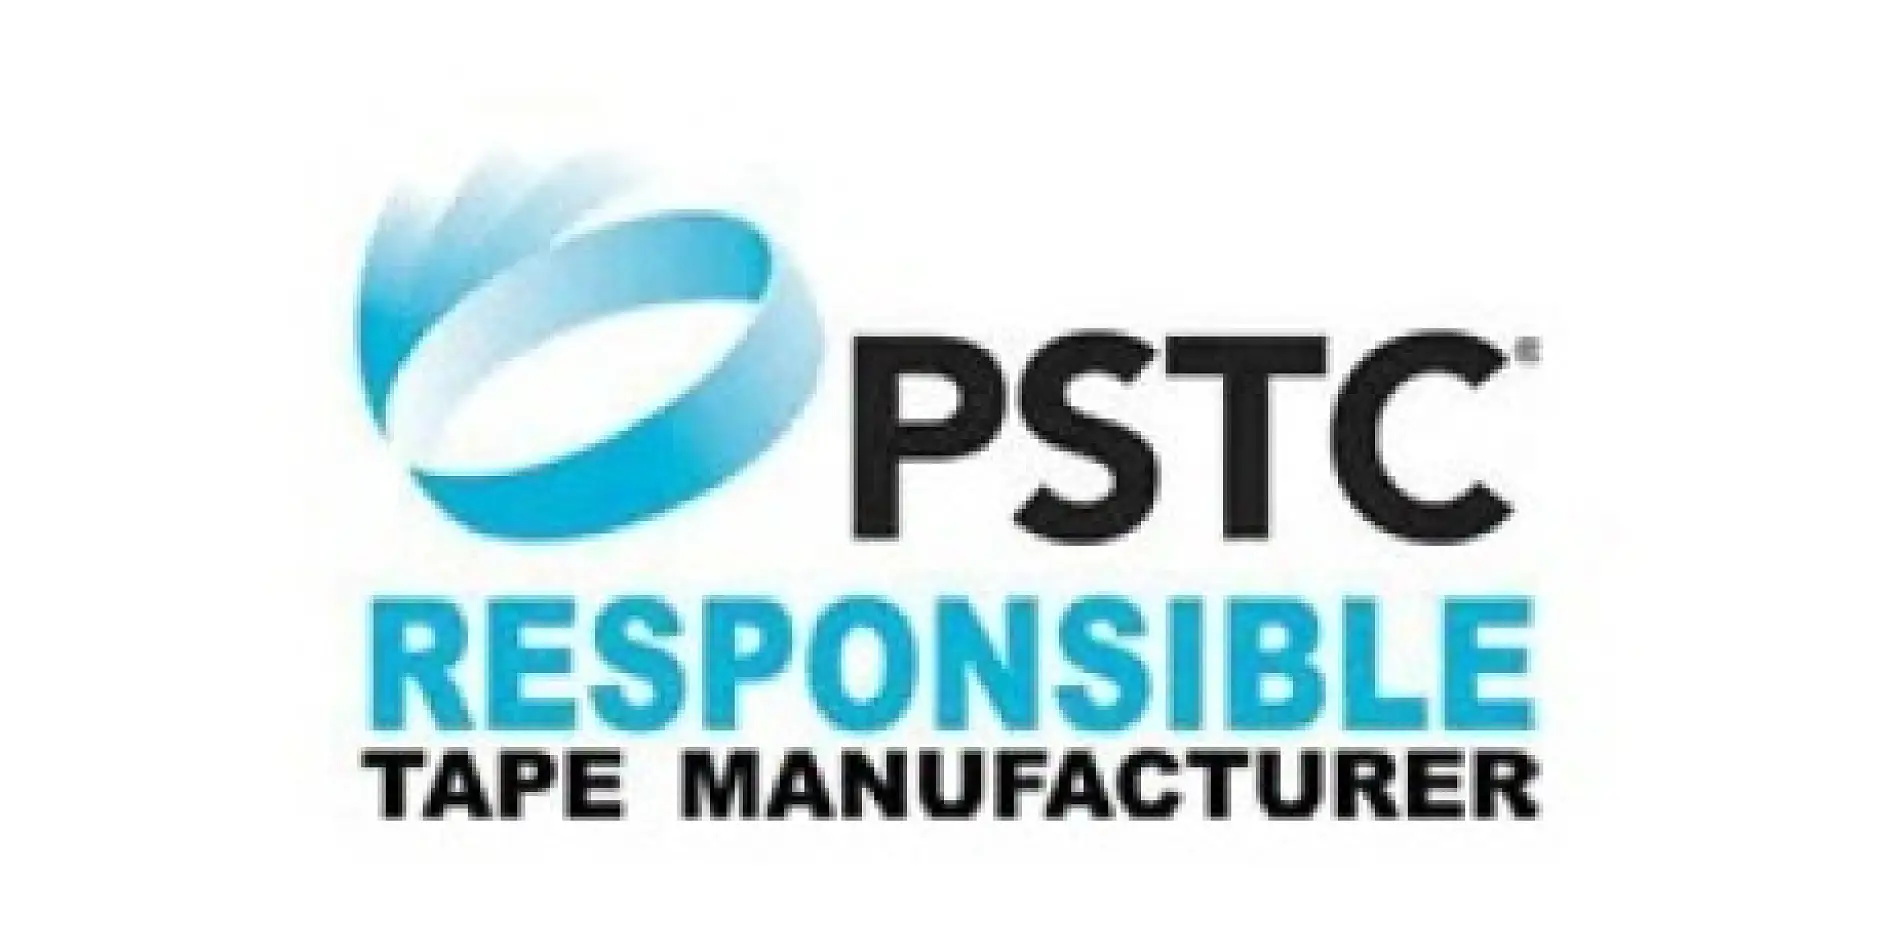 Der Pressure Sensitive Tape Council (PSTC) ist ein seit 60 Jahren bestehender gemeinnütziger nordamerikanischer Fachverband für Klebebandhersteller und verbundene Zulieferer, dessen Aufgabe es ist, der Branche zu helfen, hochwertige druckempfindliche Klebebänder für den Weltmarkt zu produzieren.